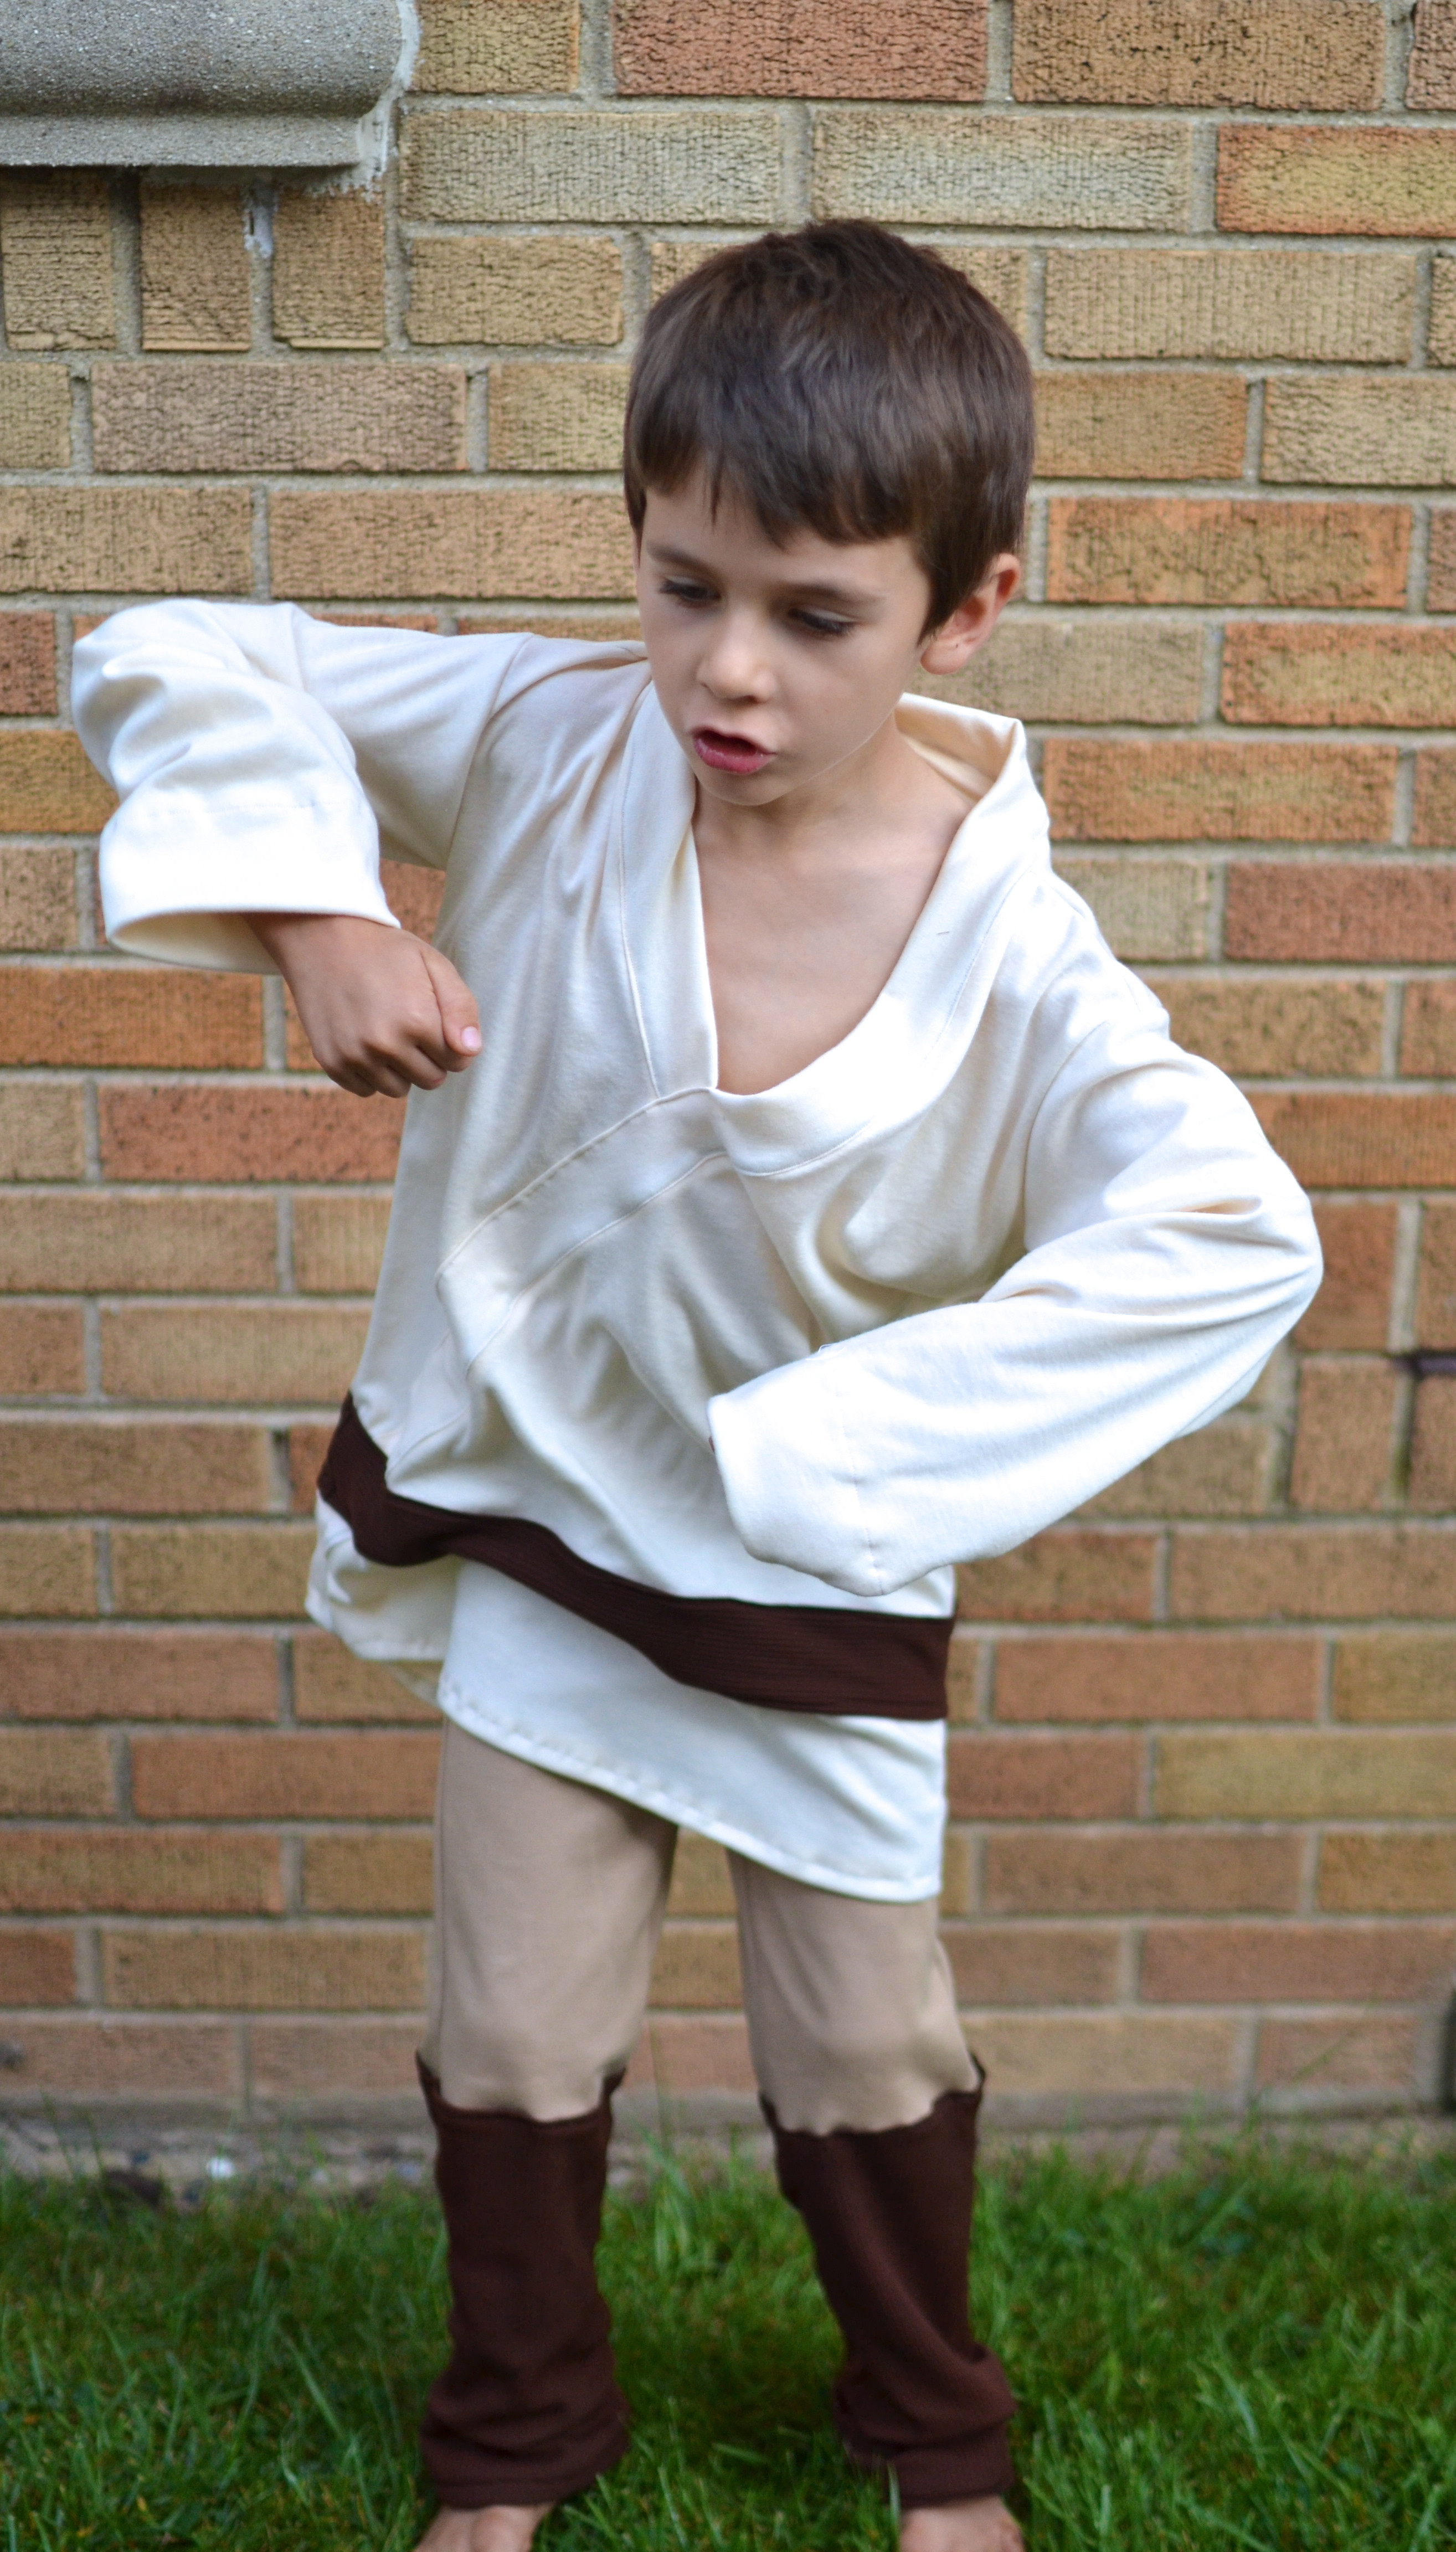 Best ideas about DIY Luke Skywalker Costume
. Save or Pin Luke Skywalker Costume Tutorial Now.